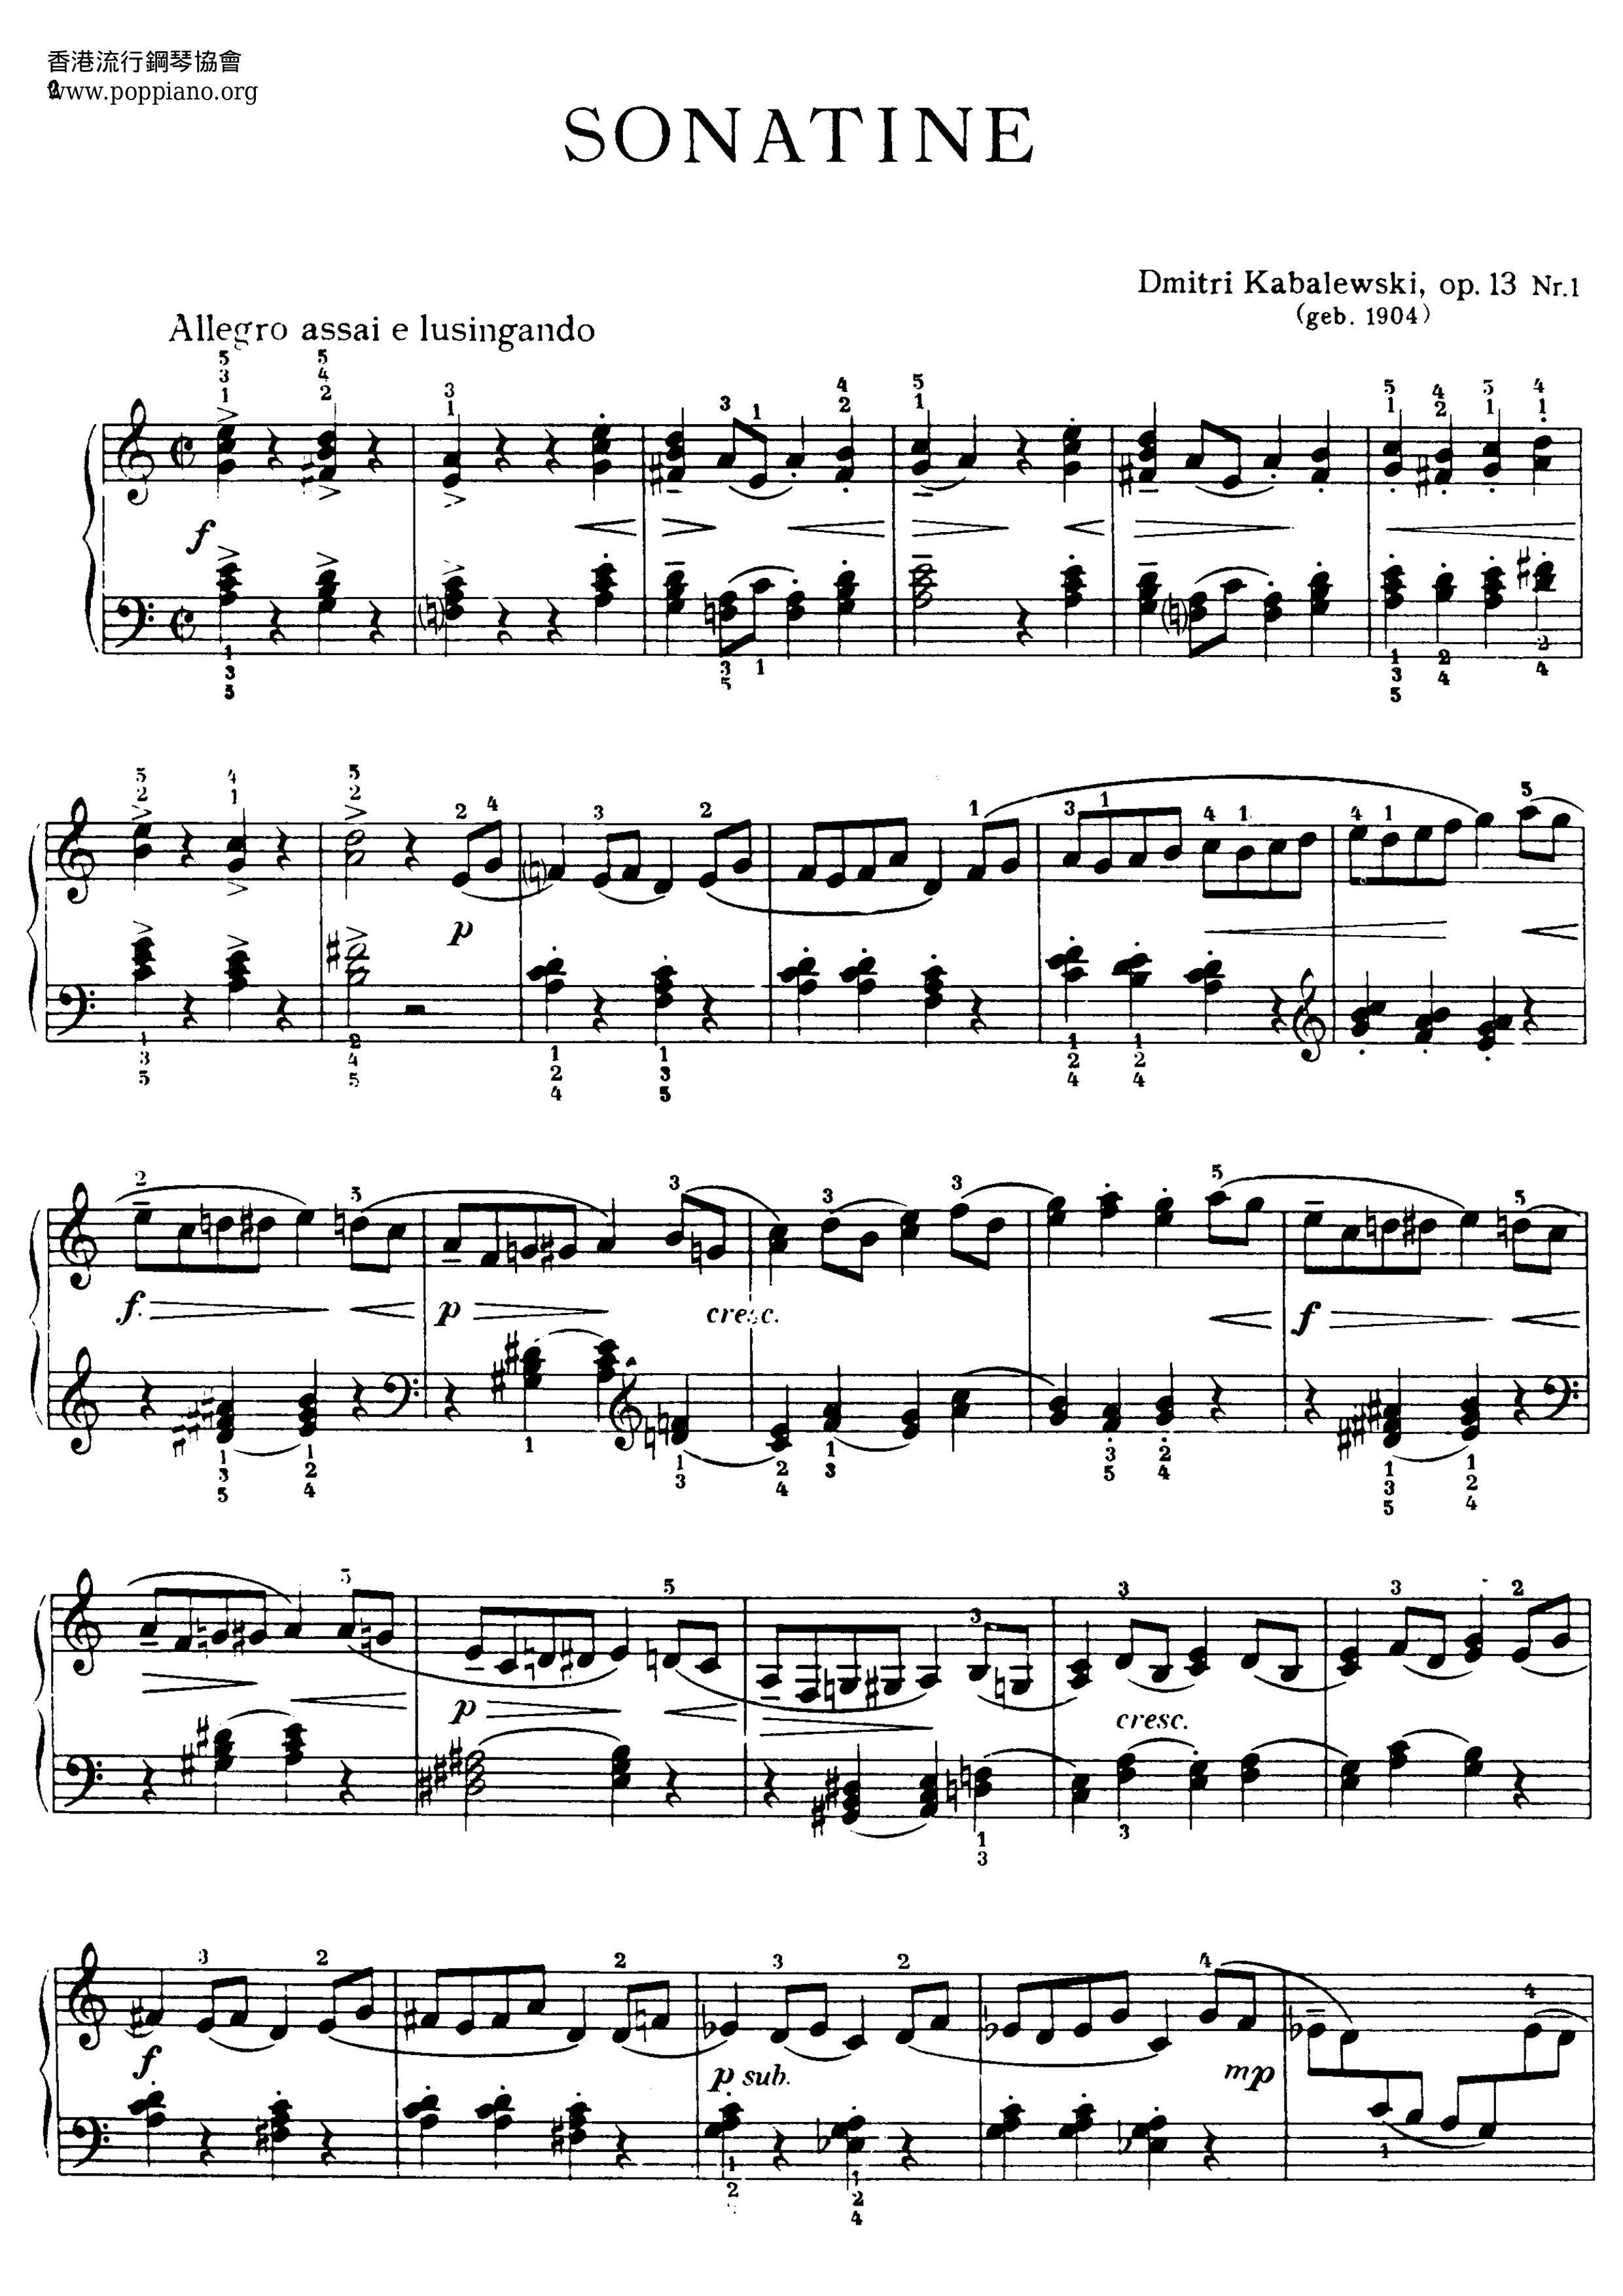 Piano Sonatina in C Major, Op. 13, No. 1: III. Prestoピアノ譜